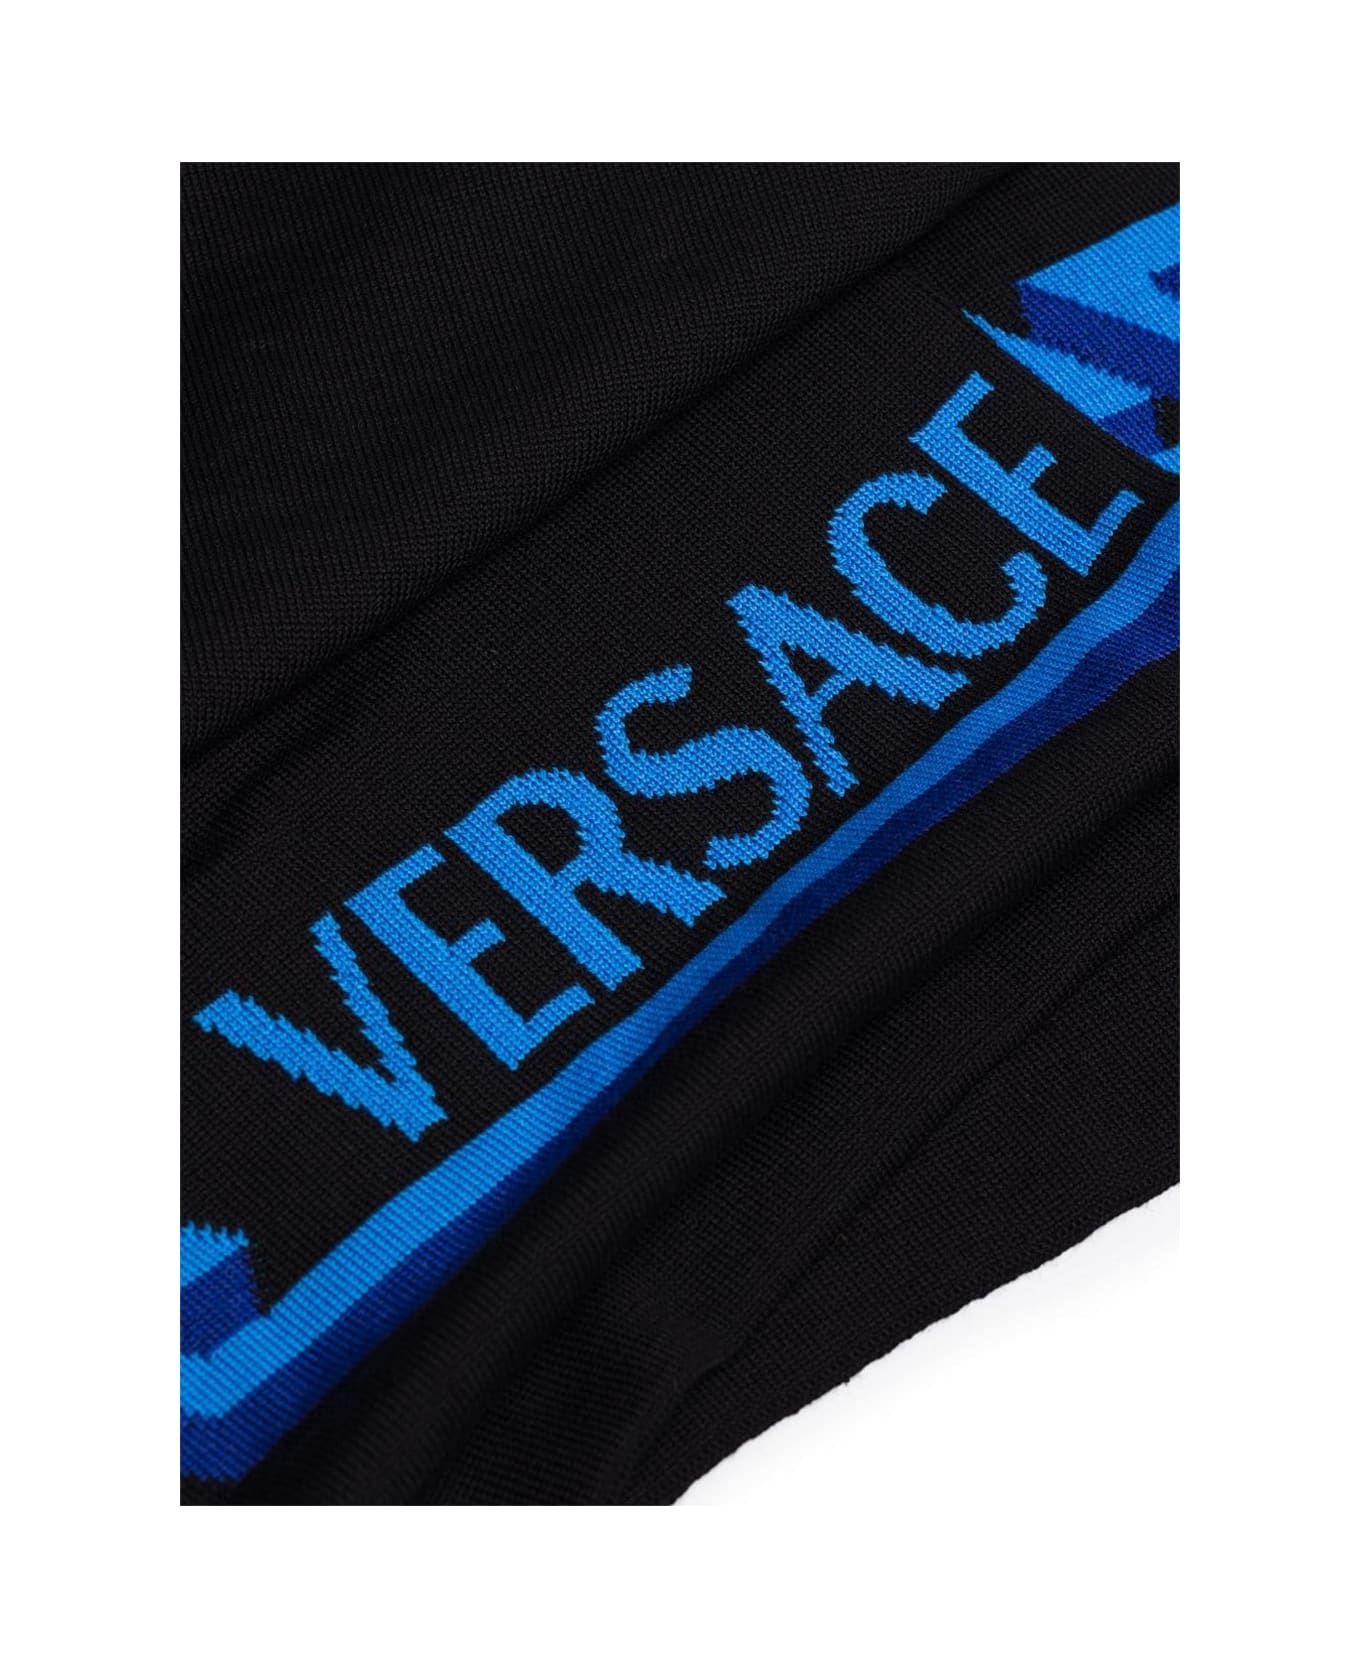 Versace Man's Greek Blue And Black Wool Scarf - Black